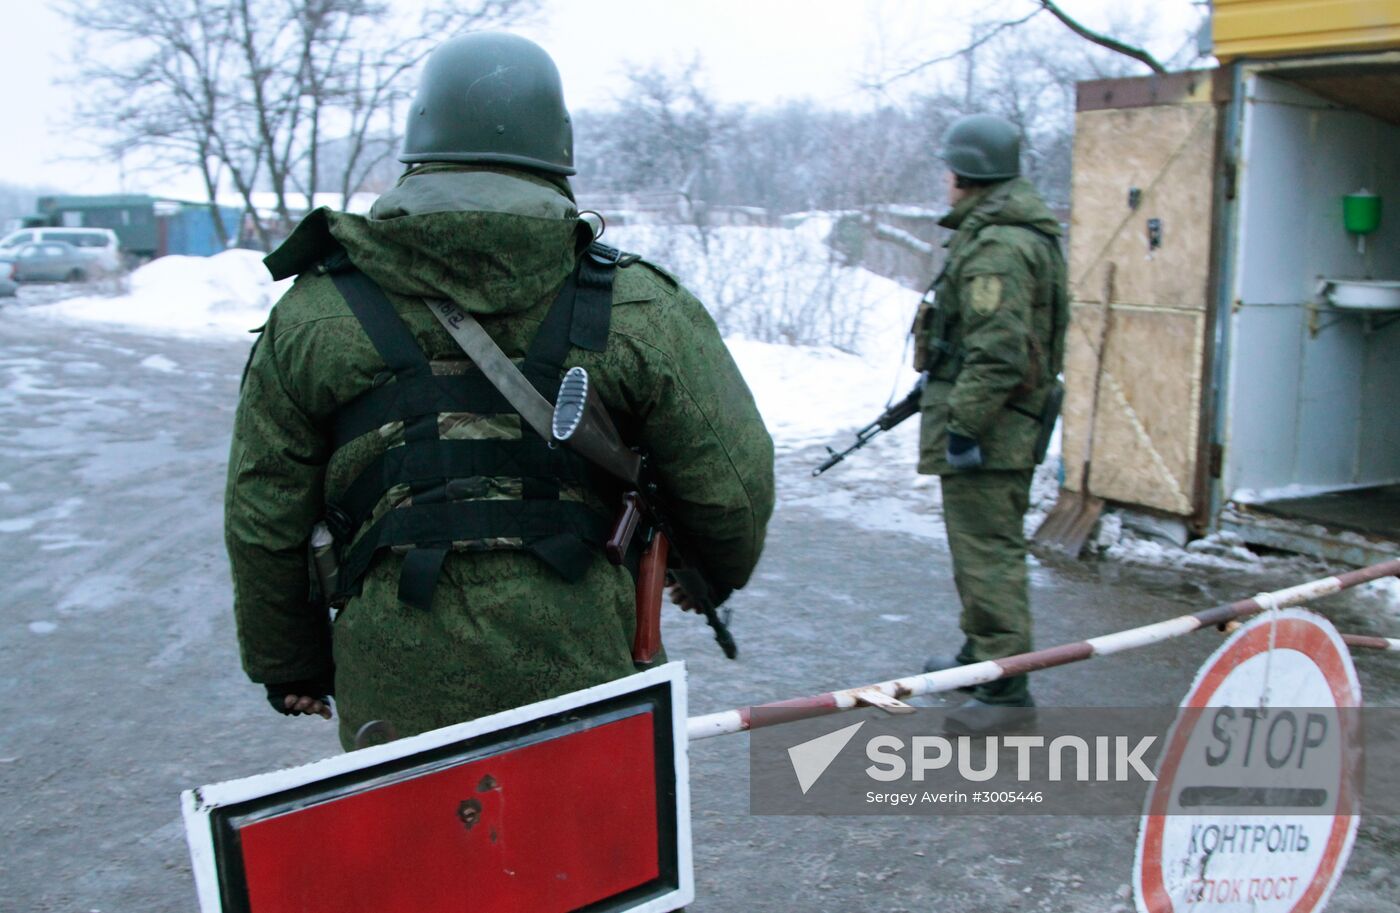 DPR and Ukraine exchange war prisoners in Donetsk Region